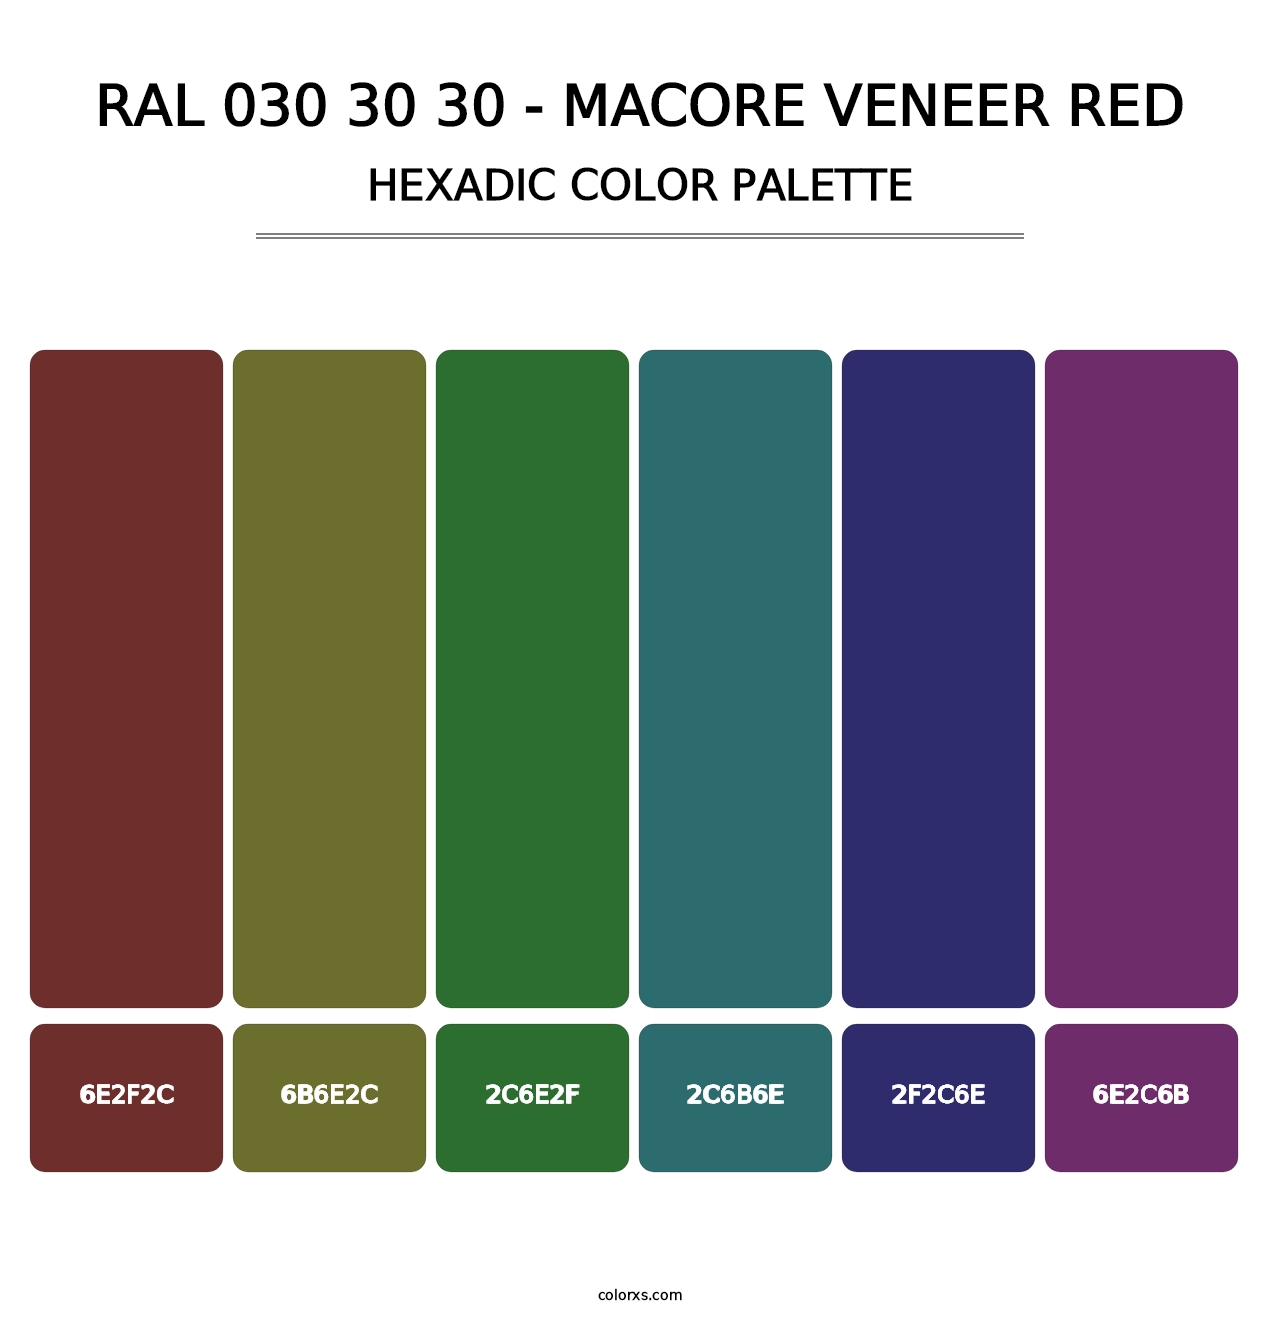 RAL 030 30 30 - Macore Veneer Red - Hexadic Color Palette